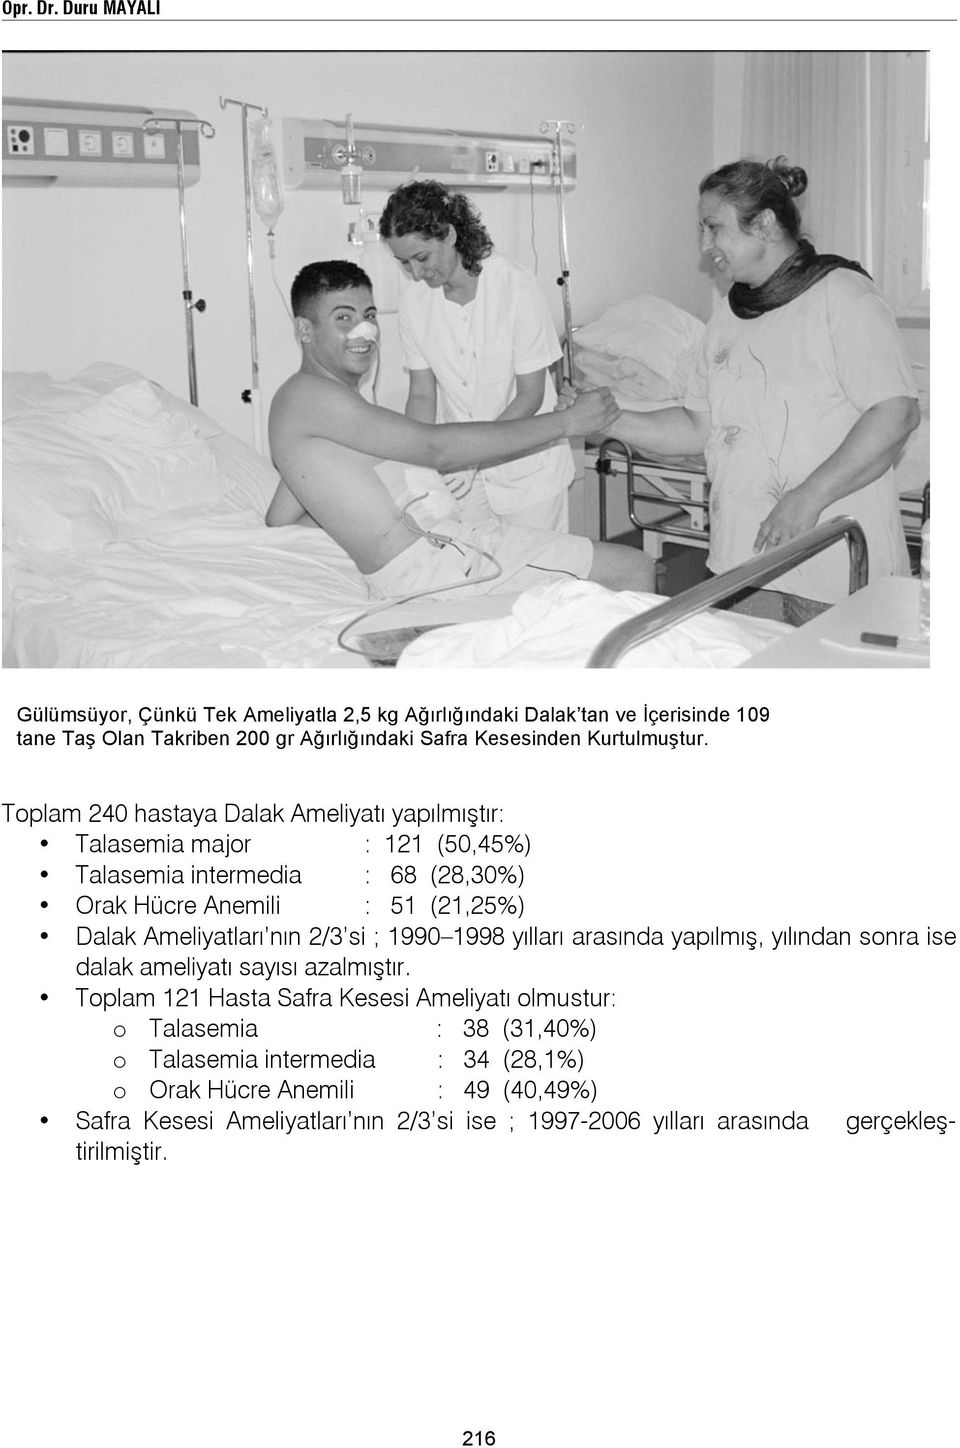 Toplam 240 hastaya Dalak Ameliyatı yapılmıştır: Talasemia major : 121 (50,45%) Talasemia intermedia : 68 (28,30%) Orak Hücre Anemili : 51 (21,25%) Dalak Ameliyatları nın